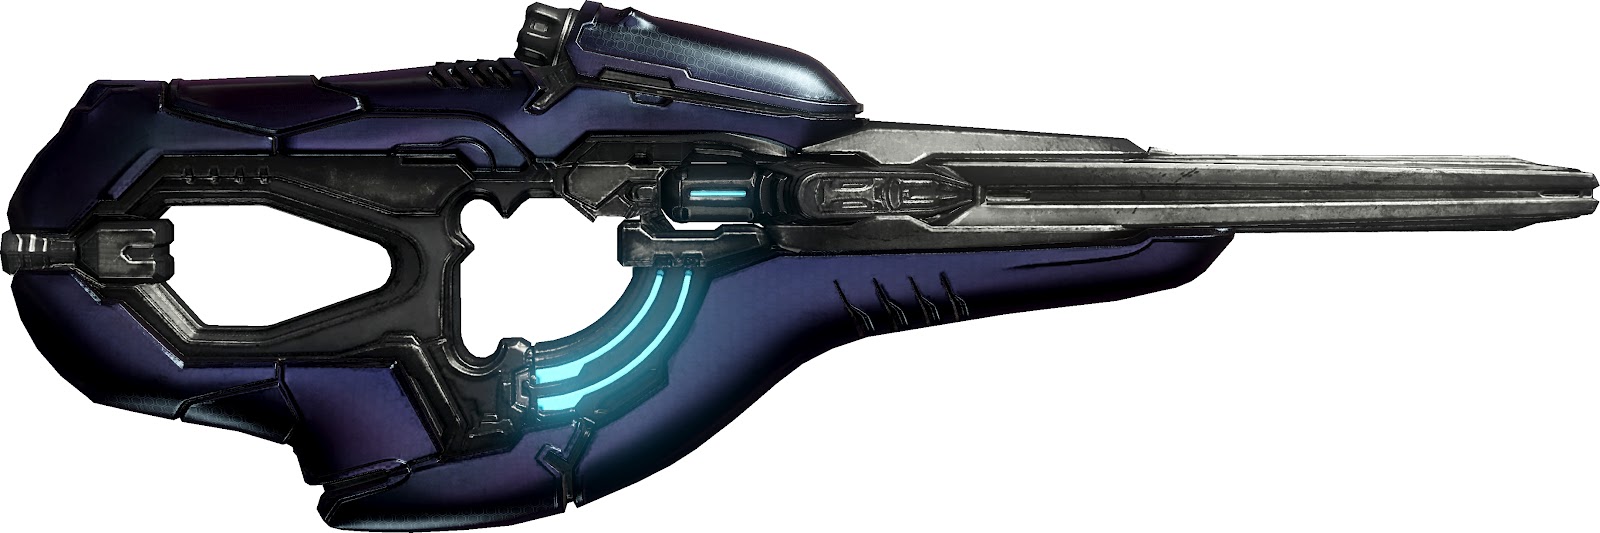 Halo4_Covenant-Carbine-02_tif_jpgcopy+-+Copy.jpg